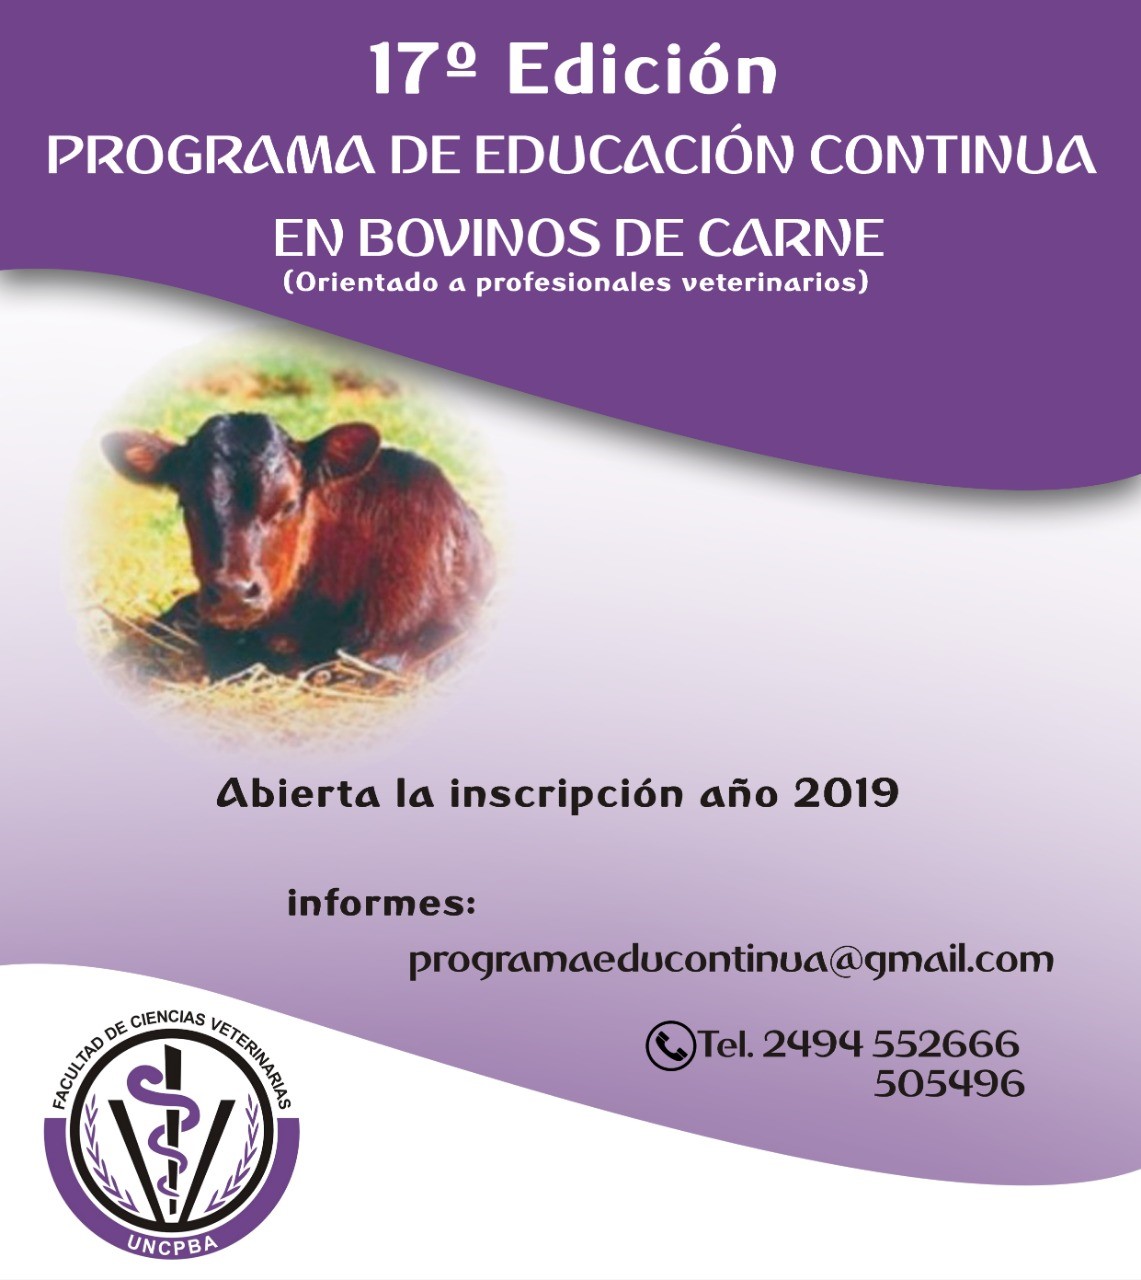 Programa de educación continua en bovinos de carne